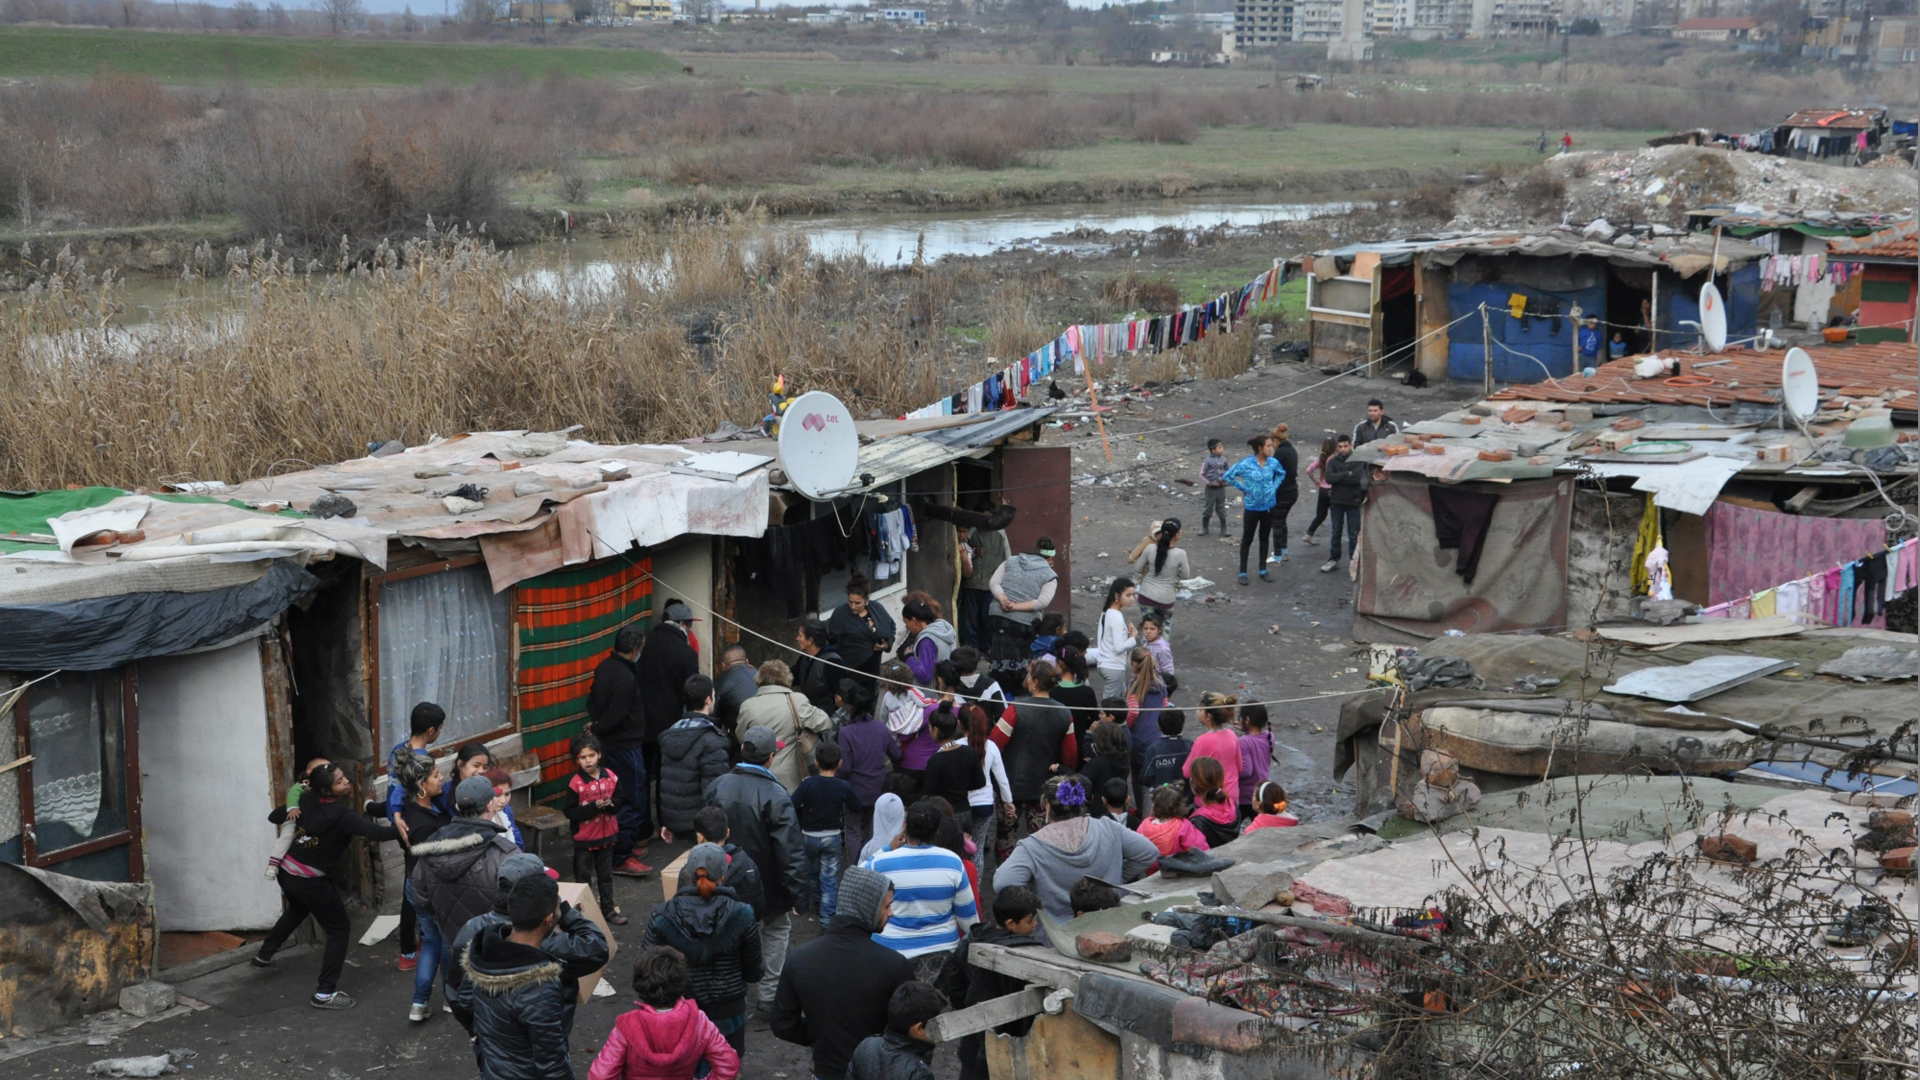 Viele Romakinder wachsen in bitterarmen Verhältnissen auf